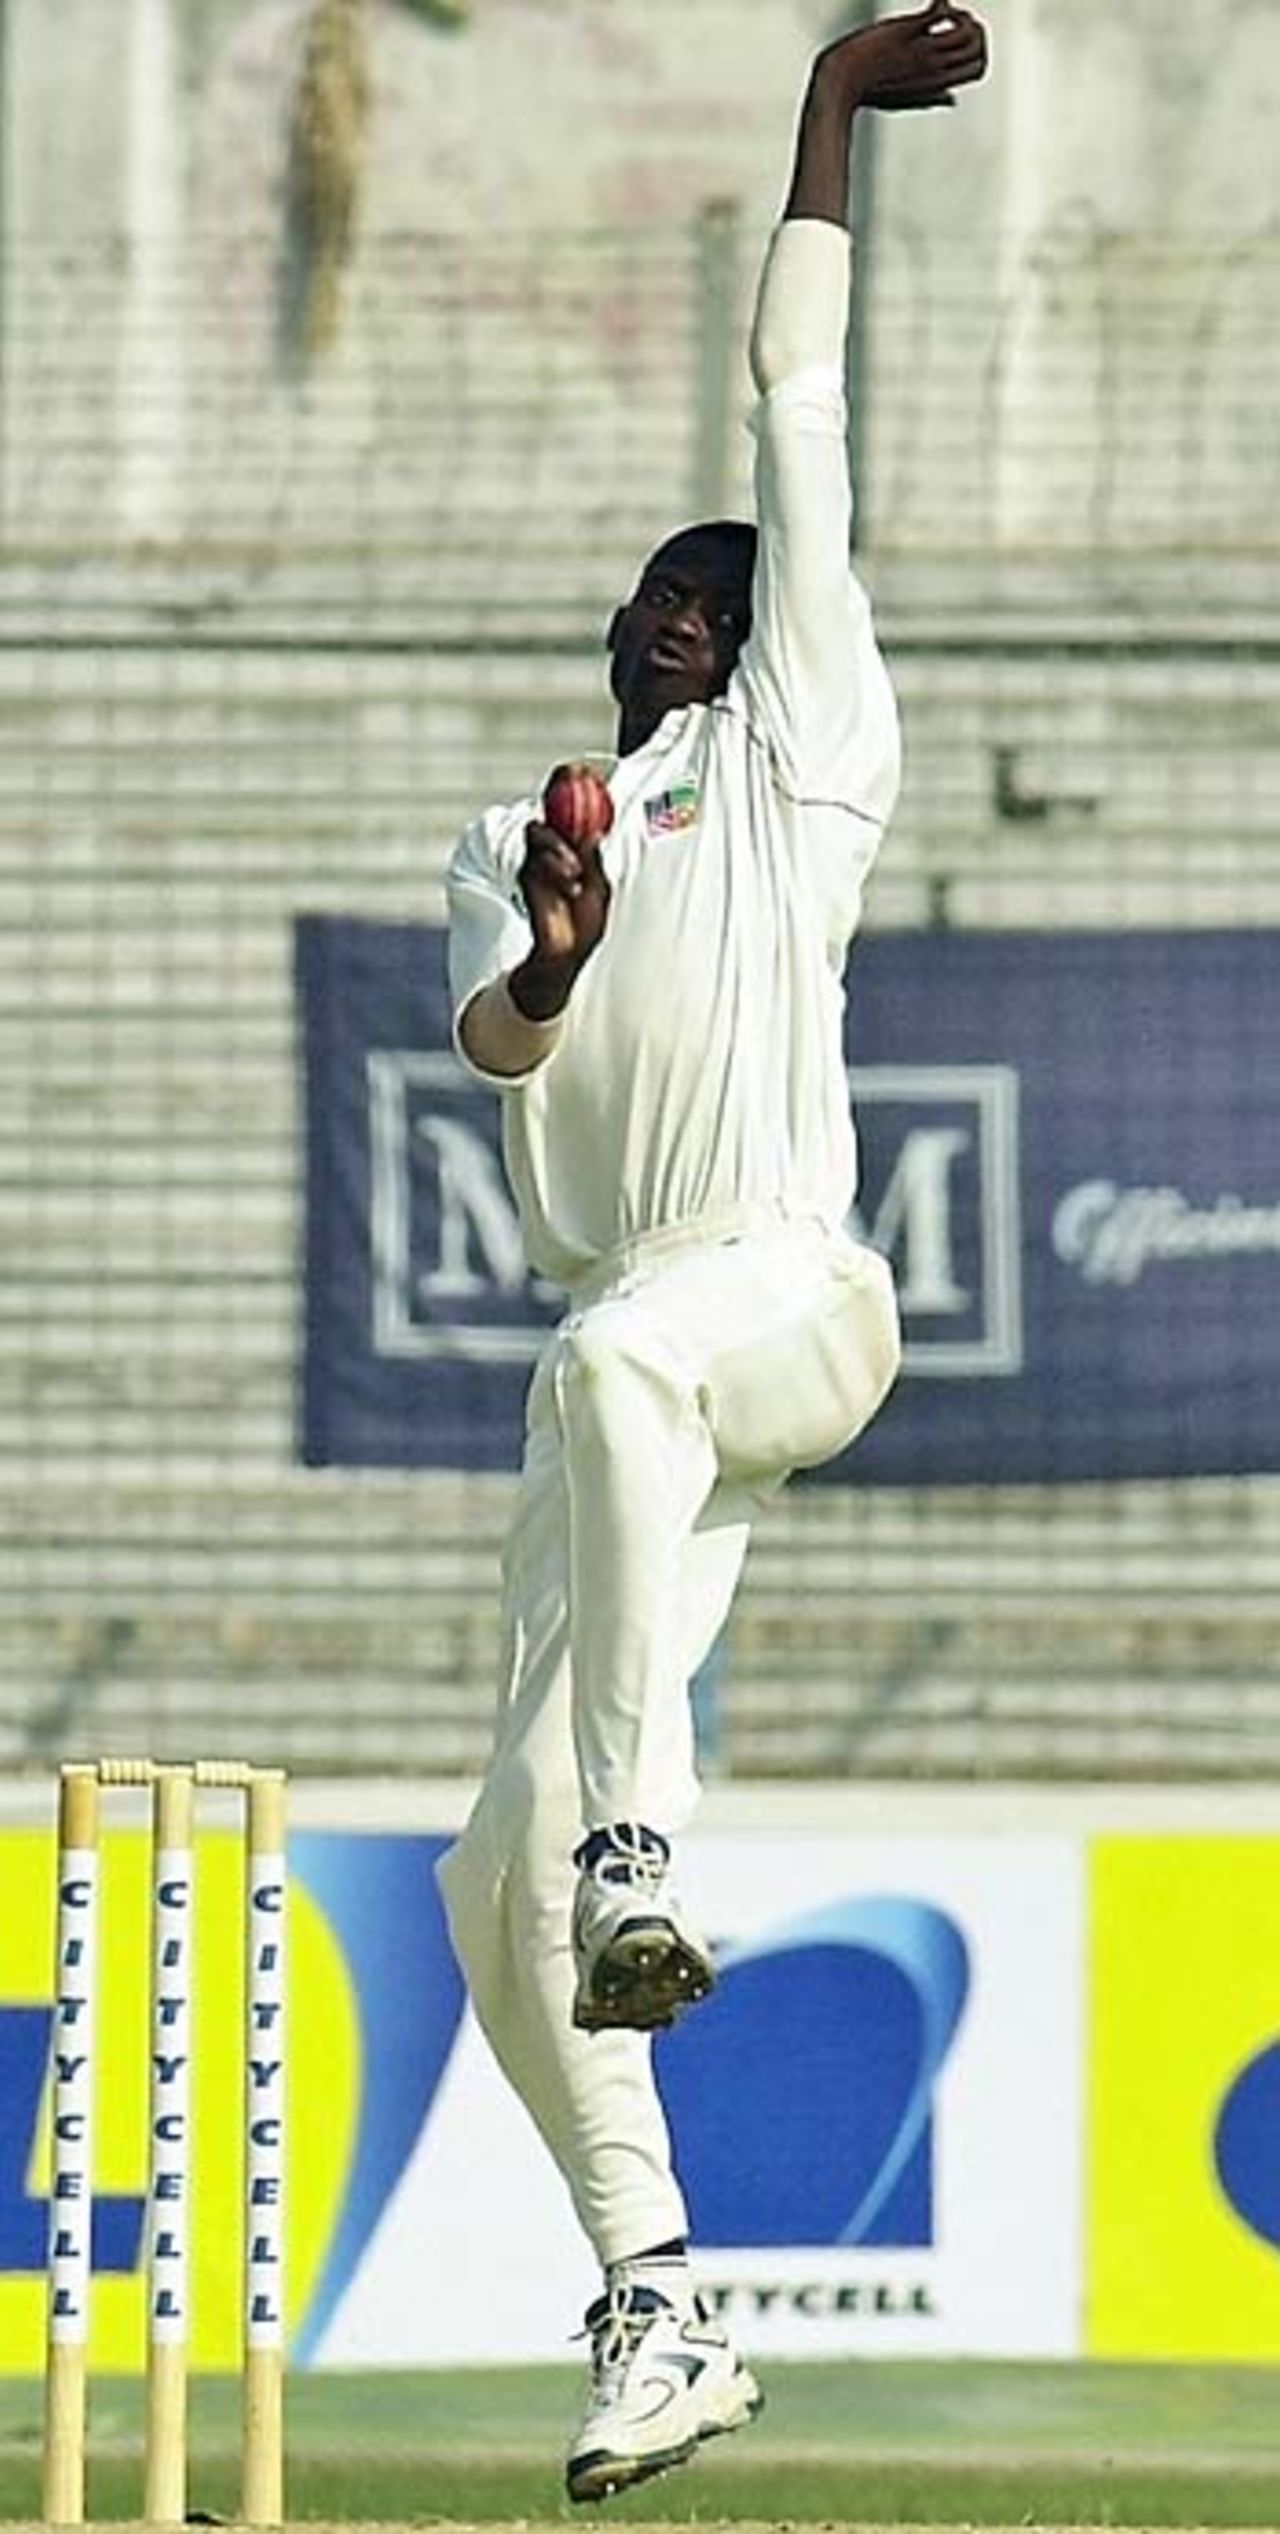 Chris Mpofu about to let rip, Bangladesh v Zimbabwe, 1st Test, Chittagong, 1st day, January 6, 2005